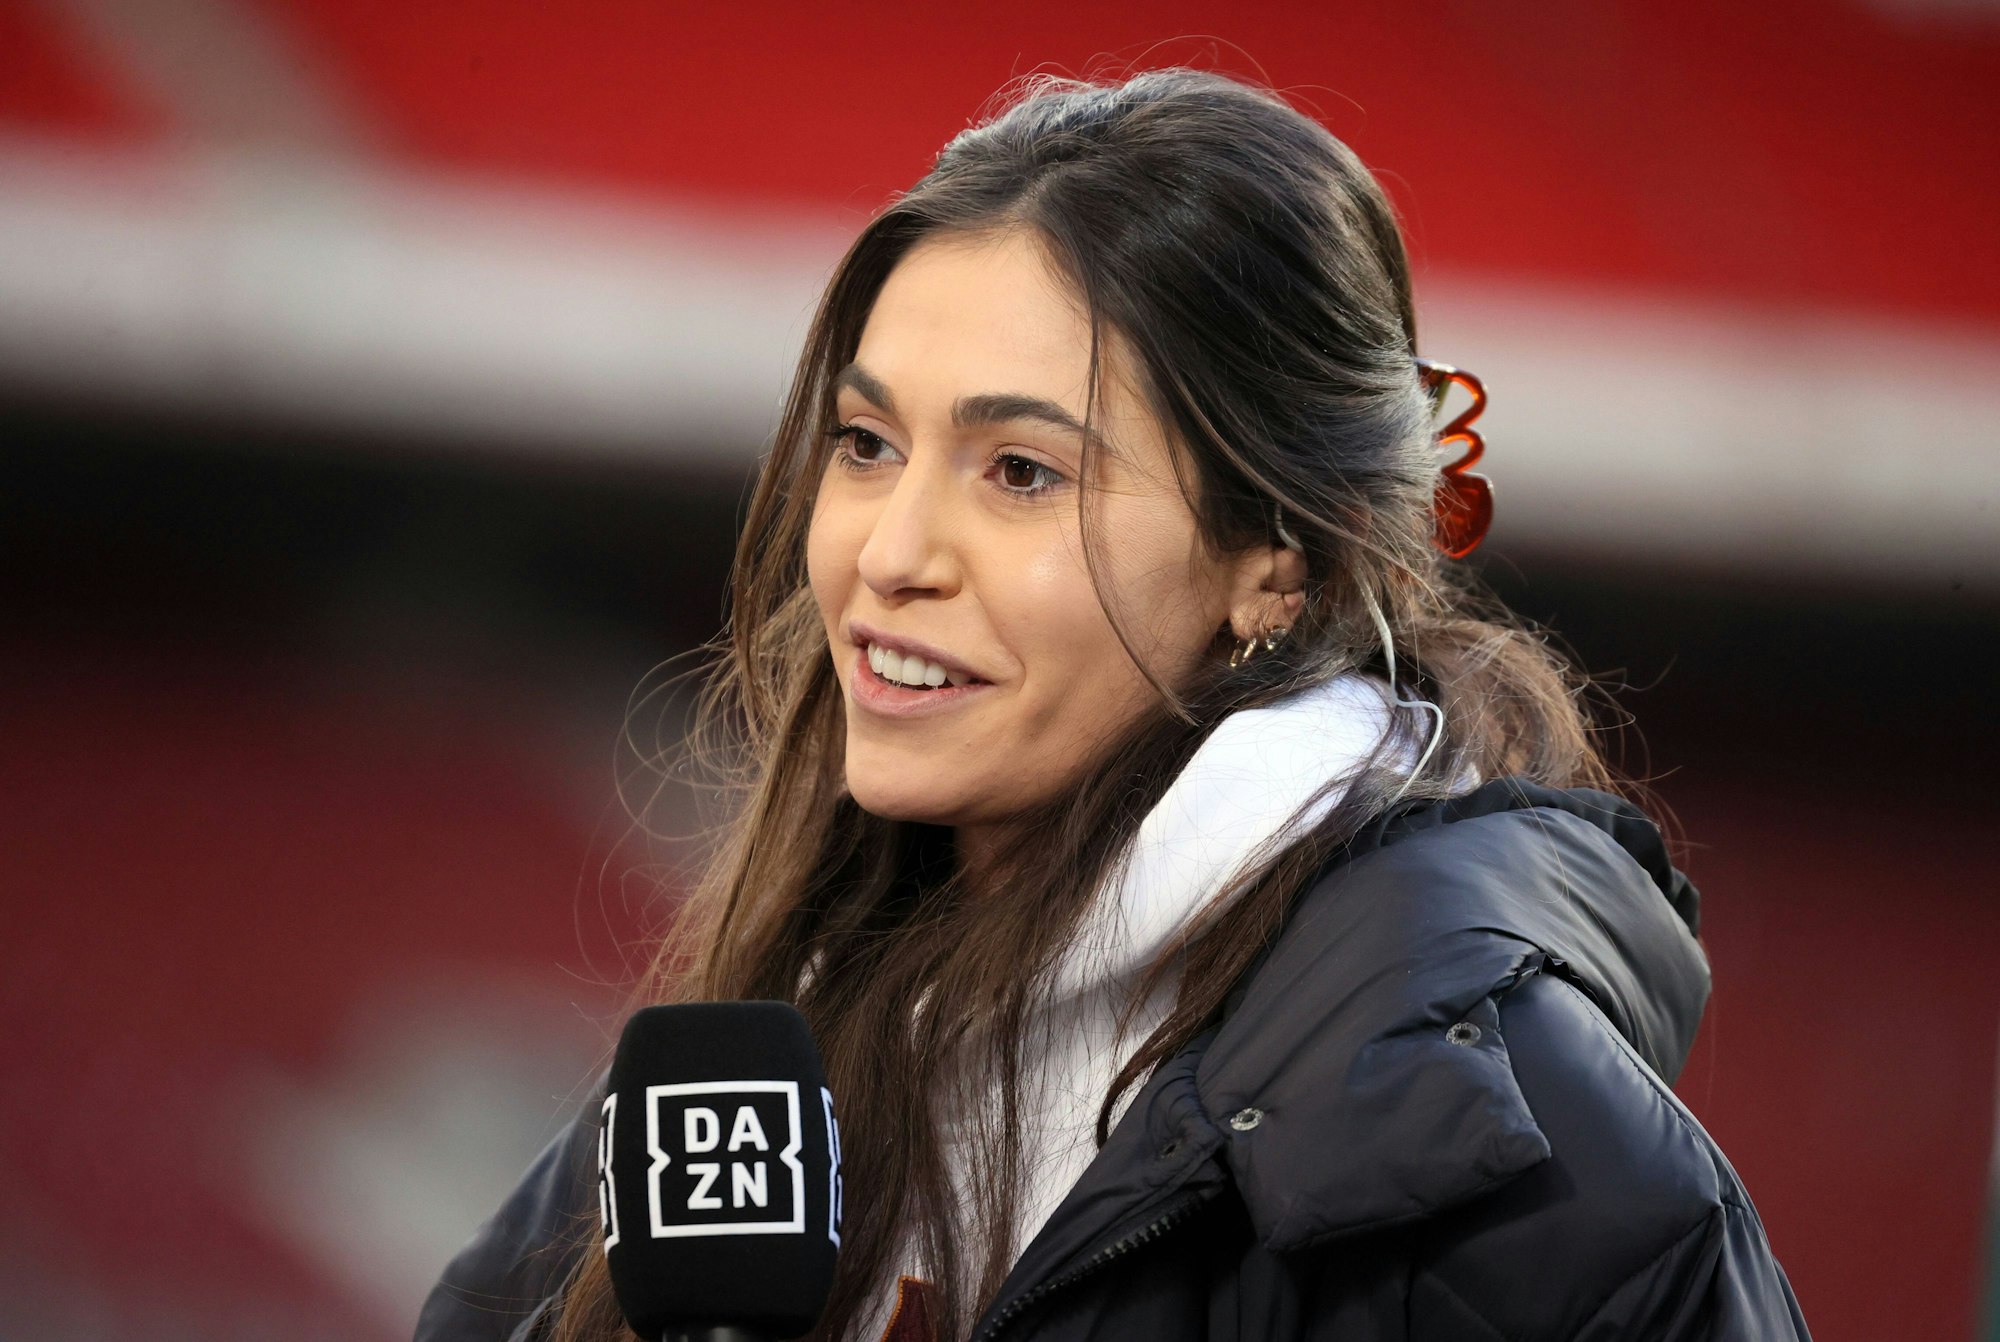 DAZN-Reporterin Ann-Sophie Kimmel steht beim Spiel zwischen dem VfB Stuttgart und Hertha BSC am Spielfeldrand.